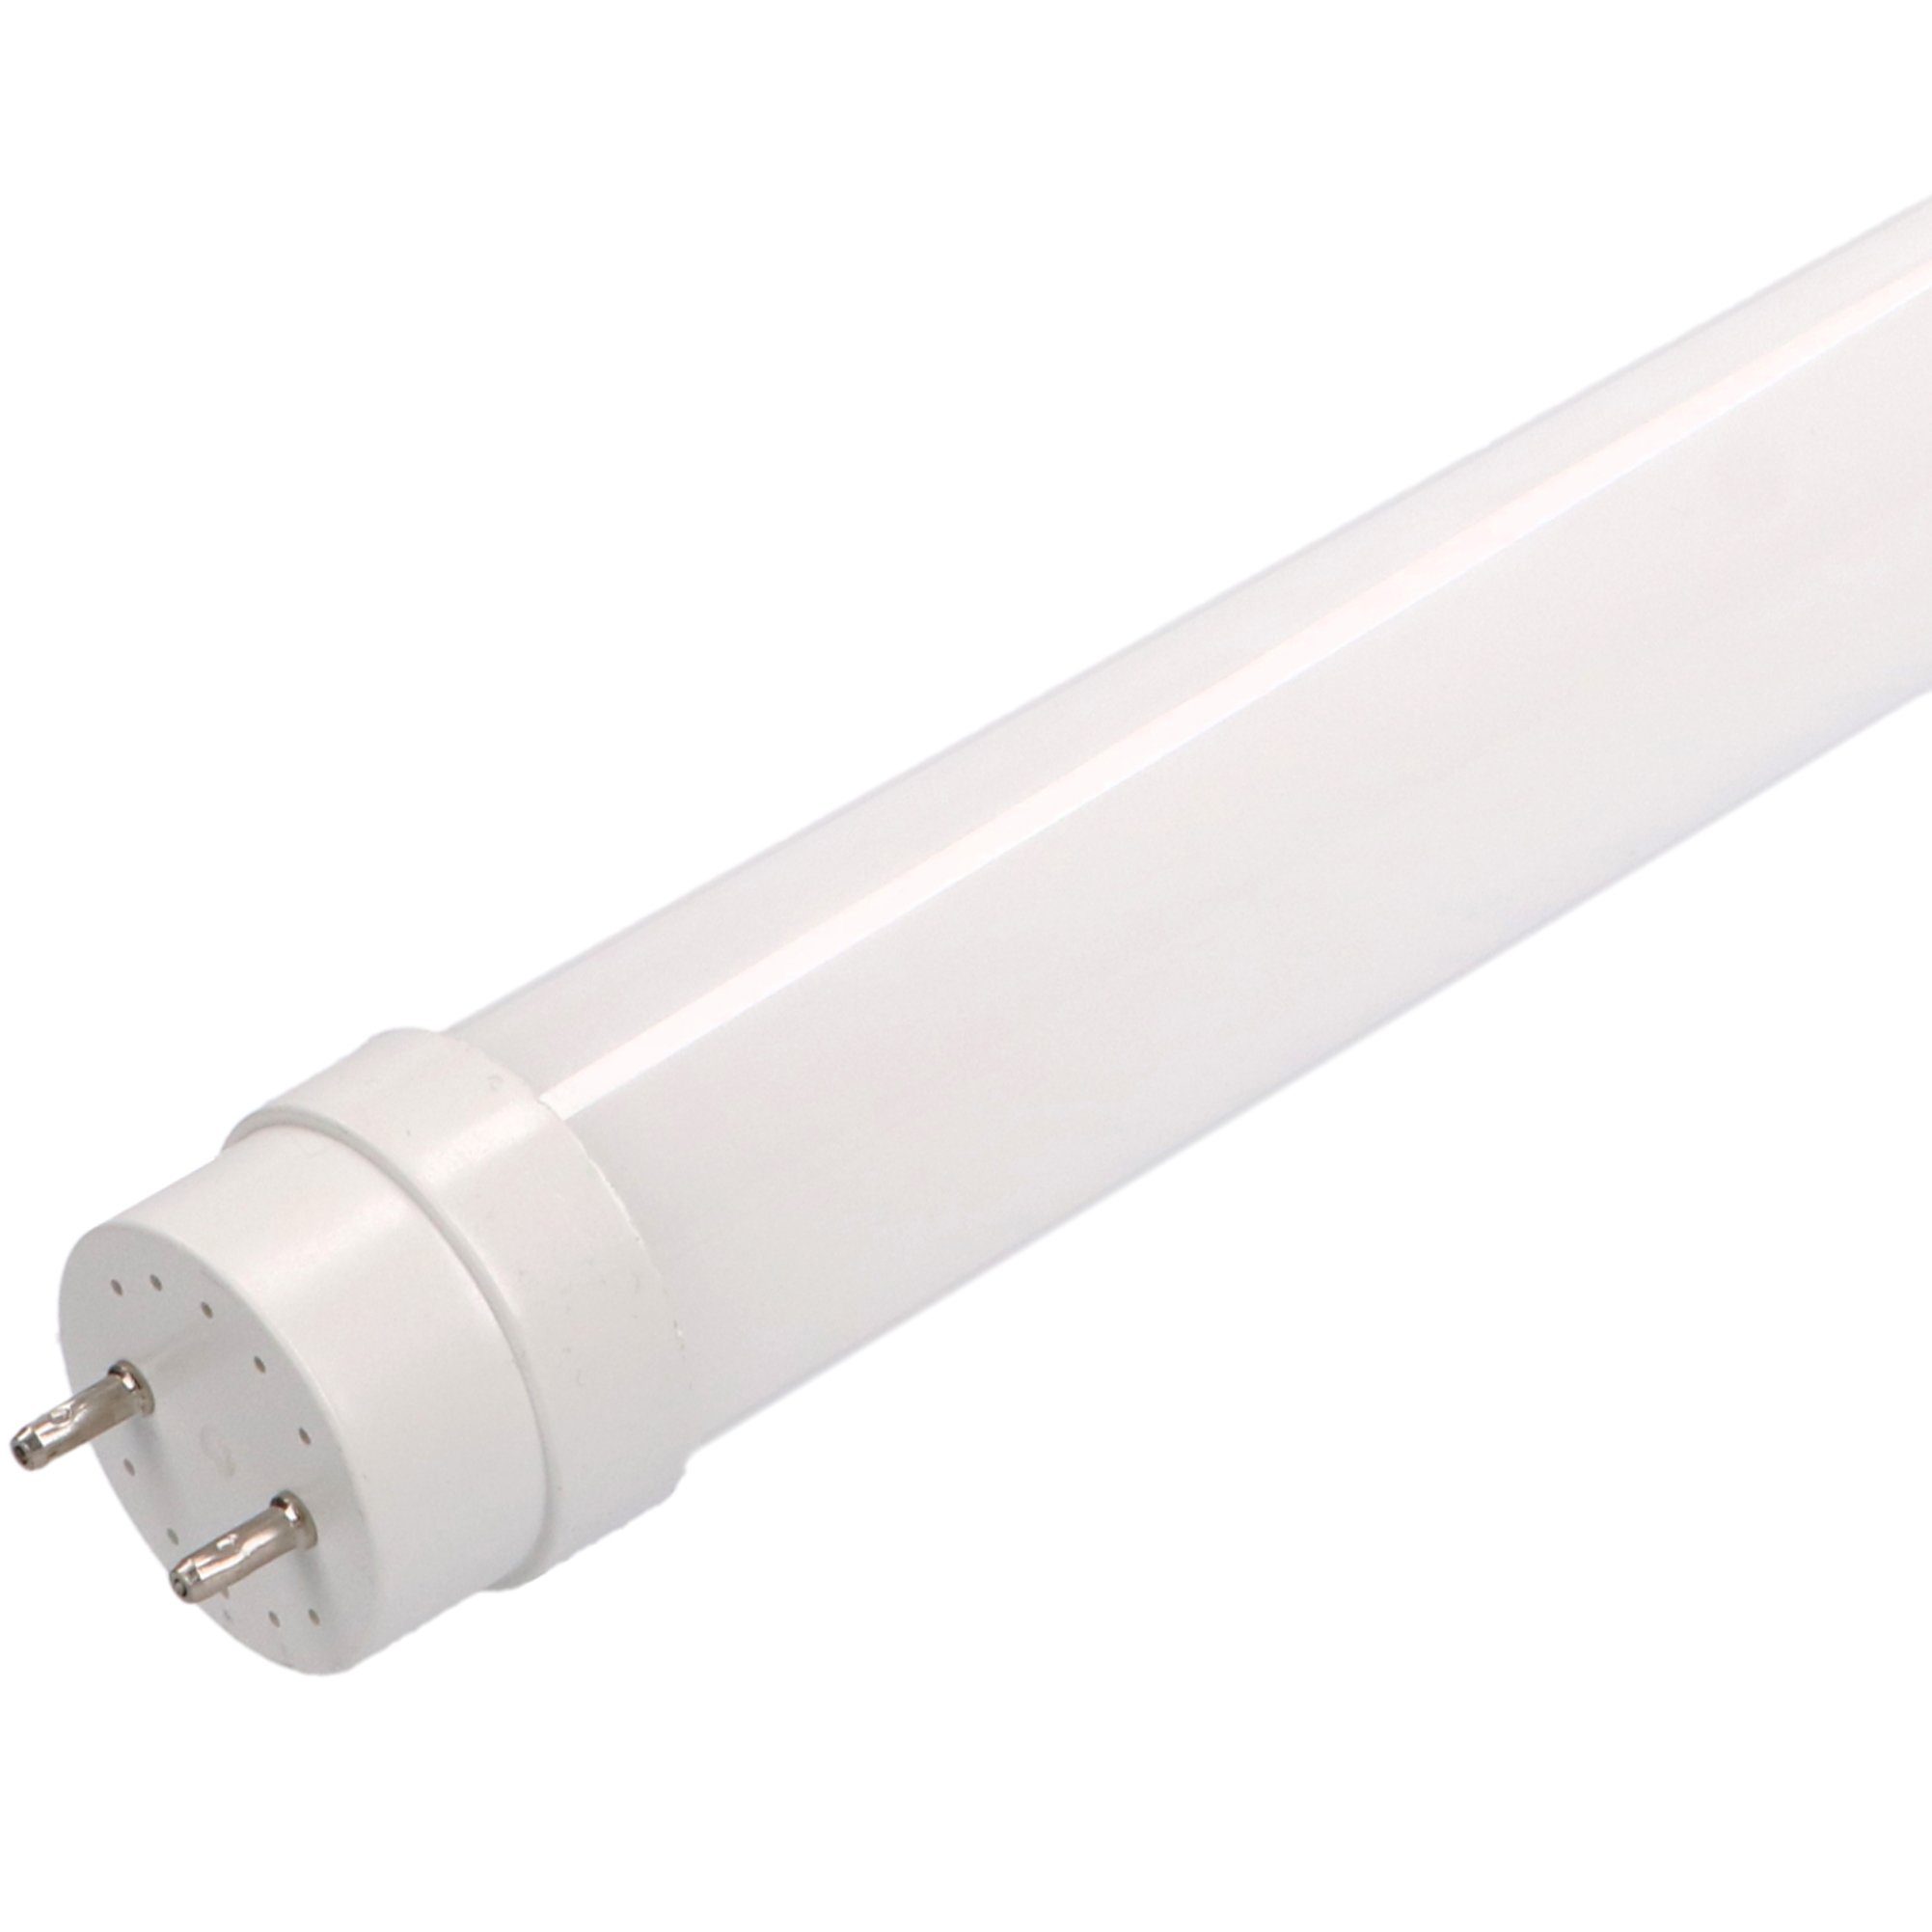 LED's light Basic LED-Leuchtmittel 0610721 LED-Röhre, 60 cm 9 Watt neutralweiß G13 mit Starter für KVG/VVG